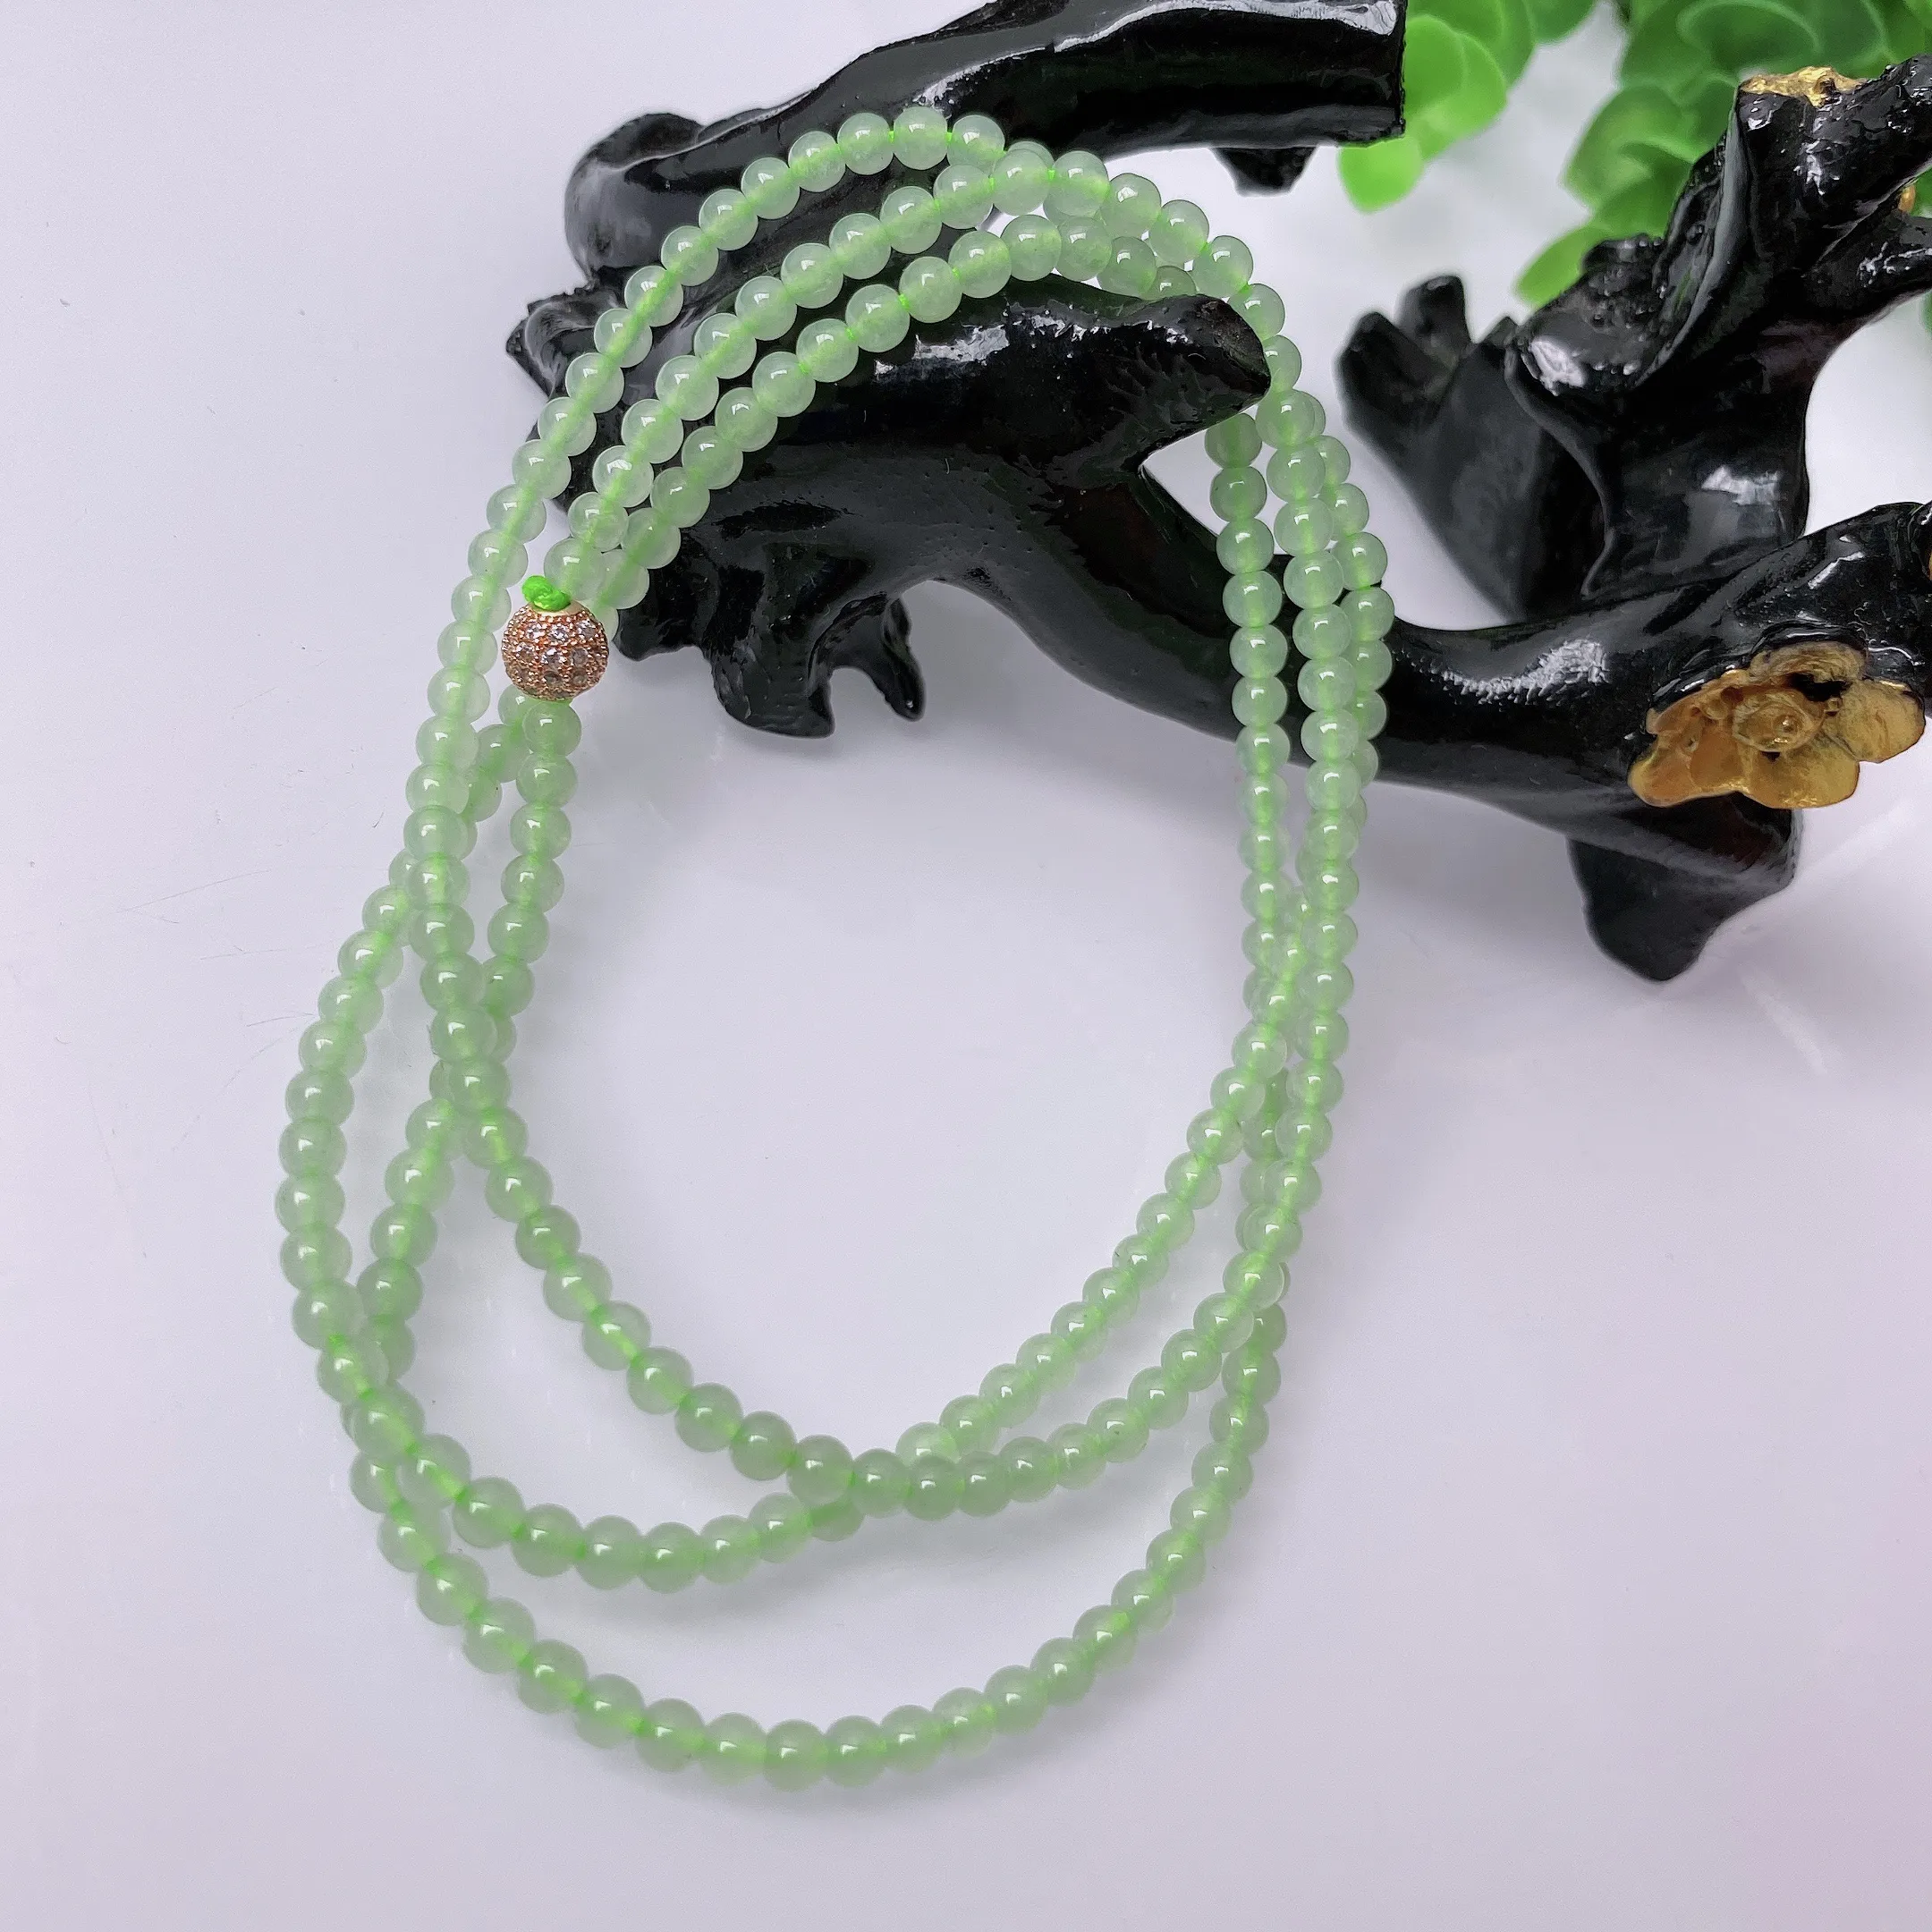 【超低价放漏】天然A货翡翠 绿色项链   小米珠 翡翠项链 玉质细腻  冰清玉润   颜色漂亮  取一尺寸3.5mm   #41915208